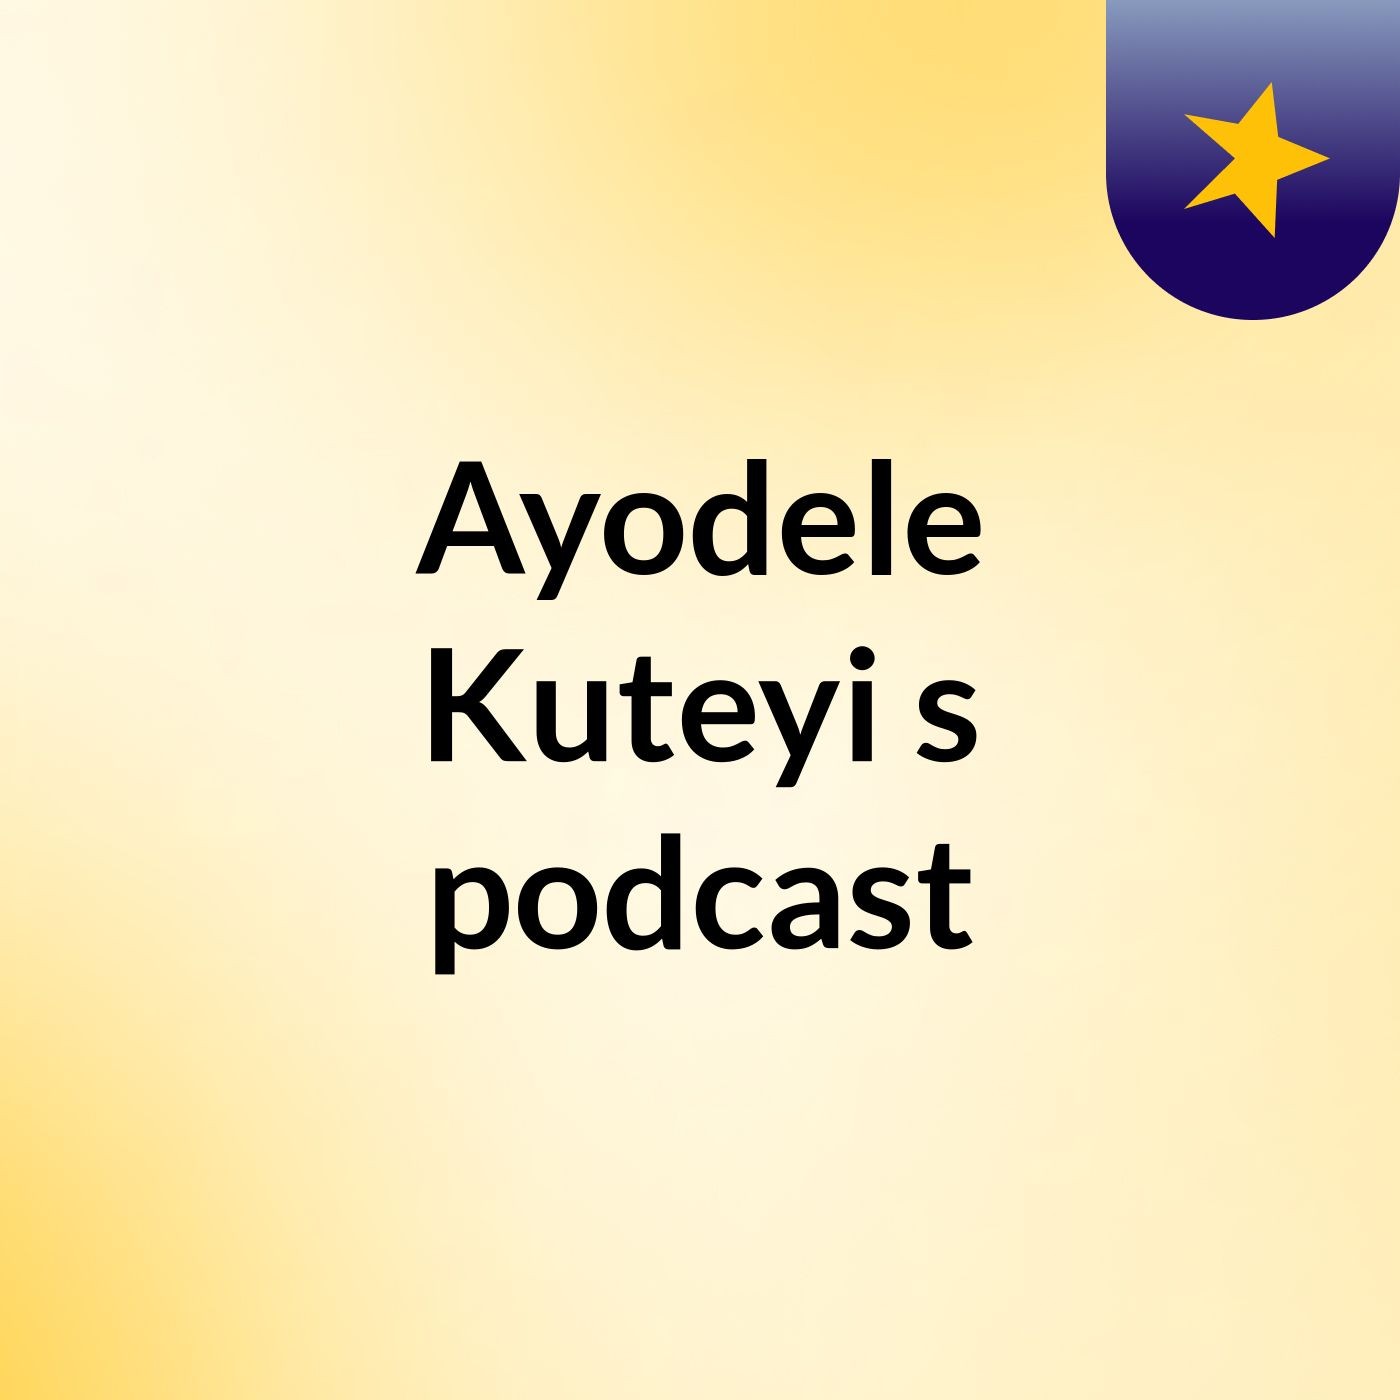 Episode 35 - Ayodele Kuteyi's podcast